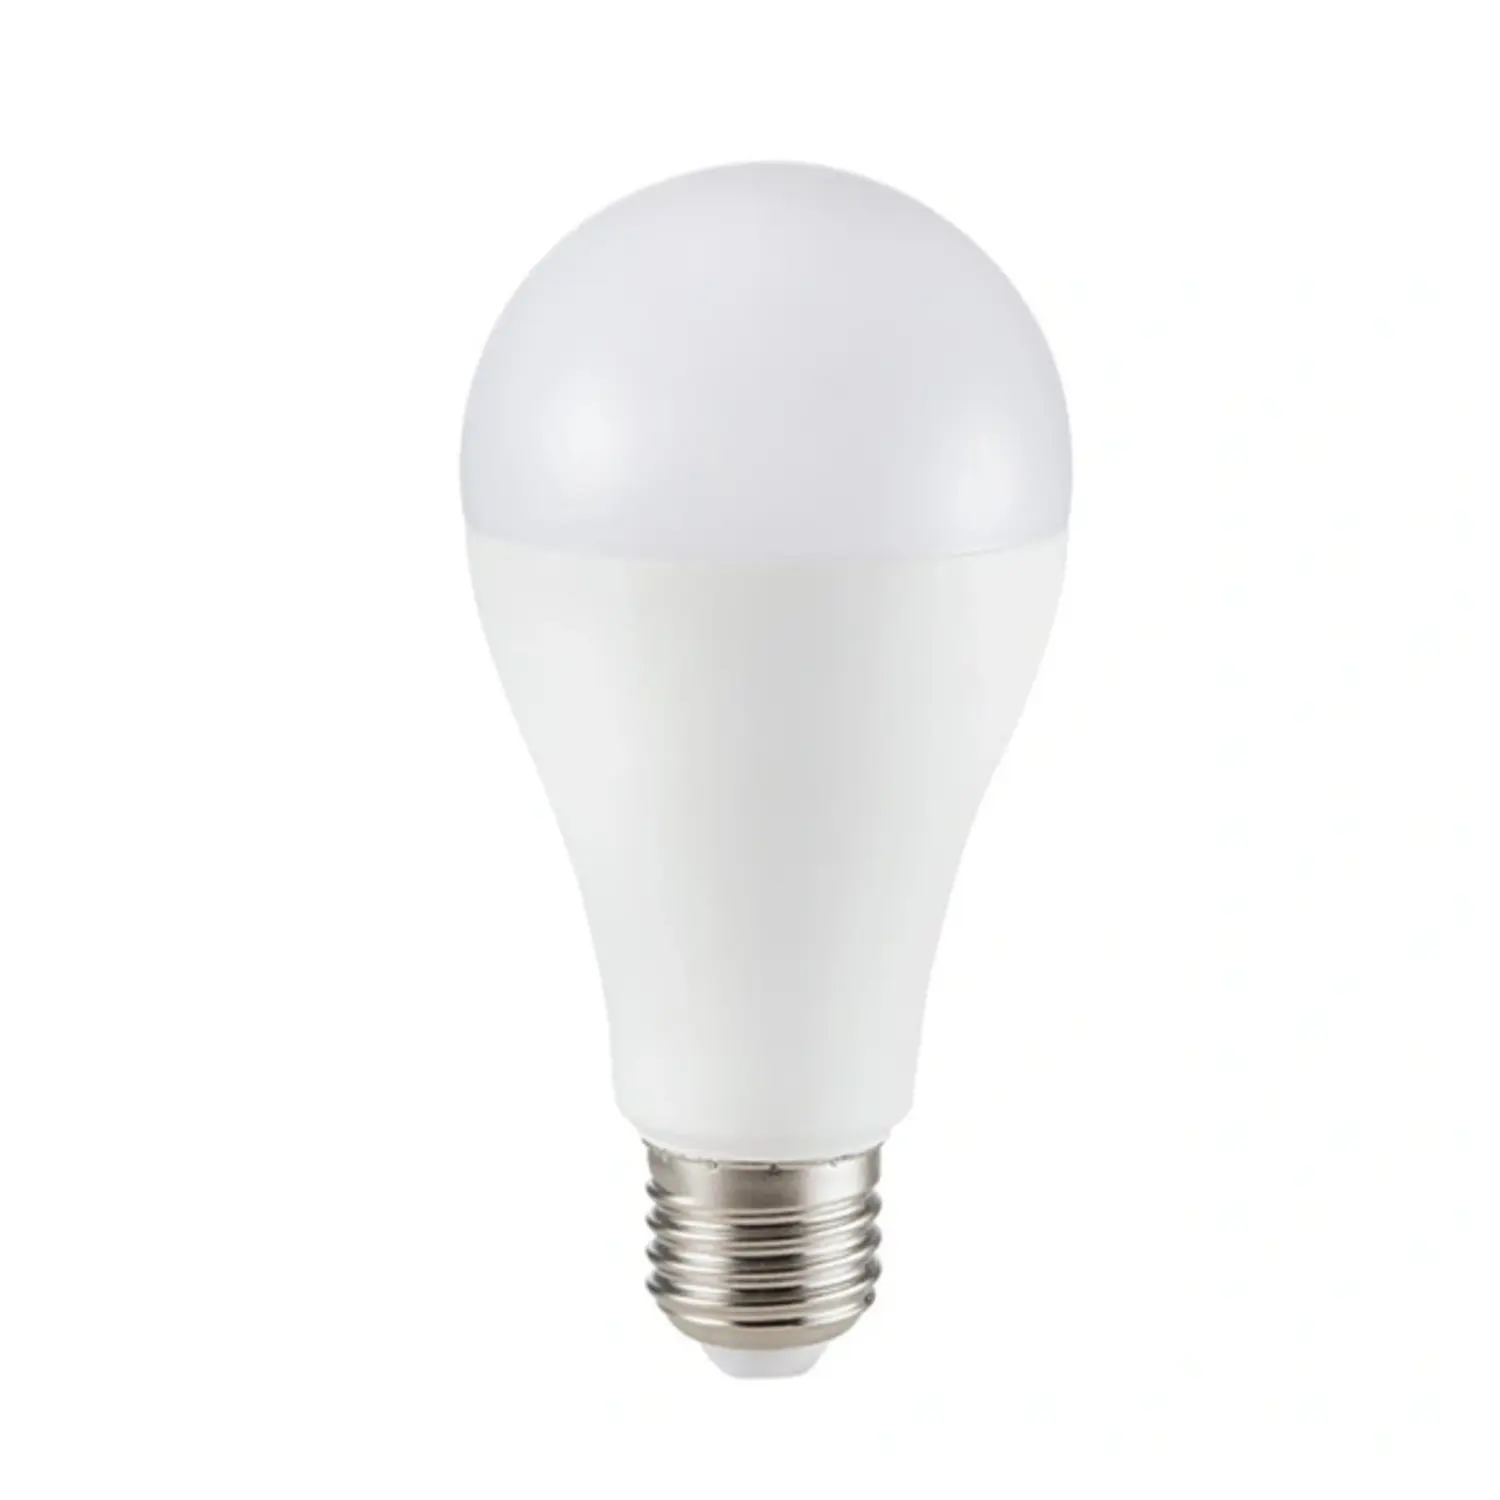 immagine del prodotto lampadina led bulbo classico chip samsung A65 e27 15 watt bianco caldo